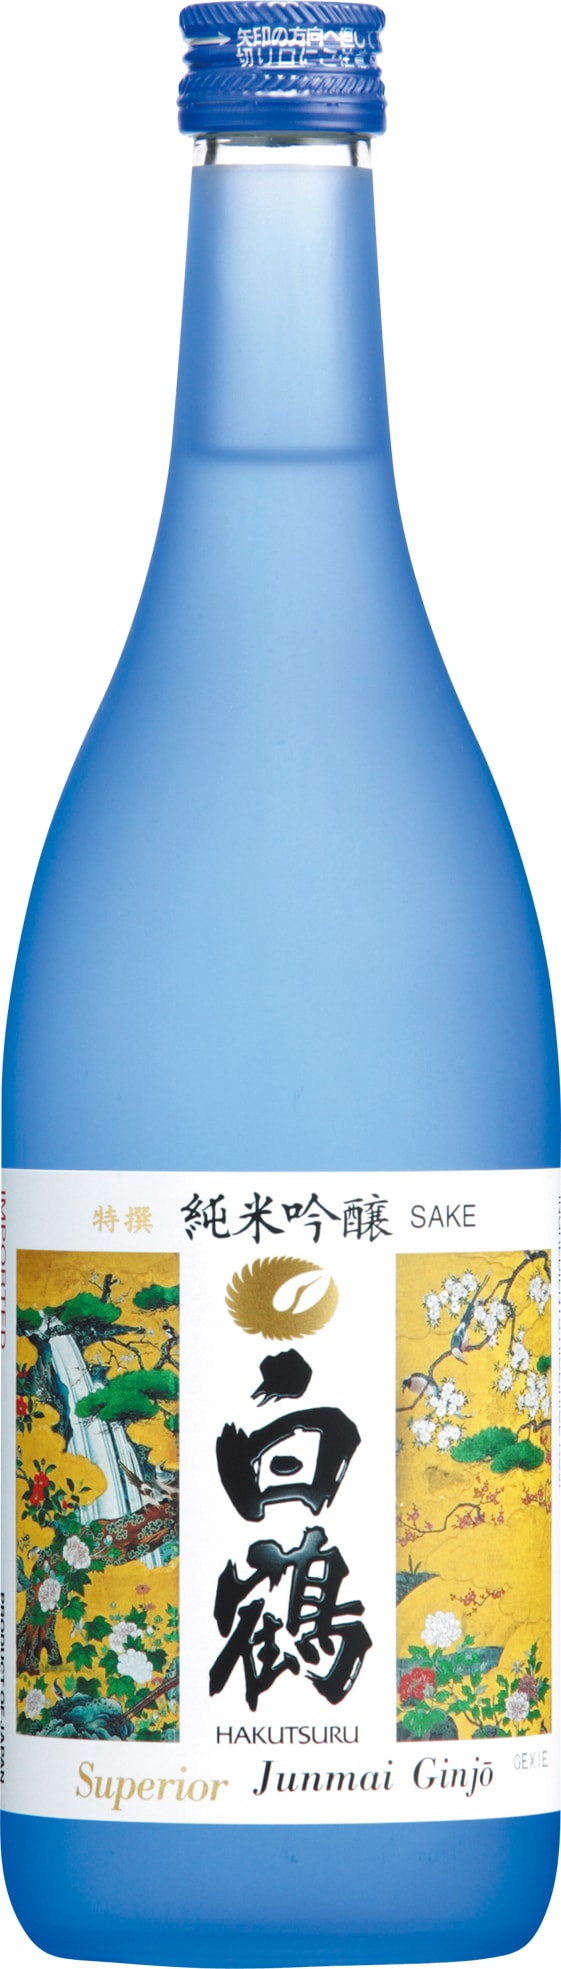 【純米吟醸酒】白鶴酒造 720ml 日本第一暢銷品牌